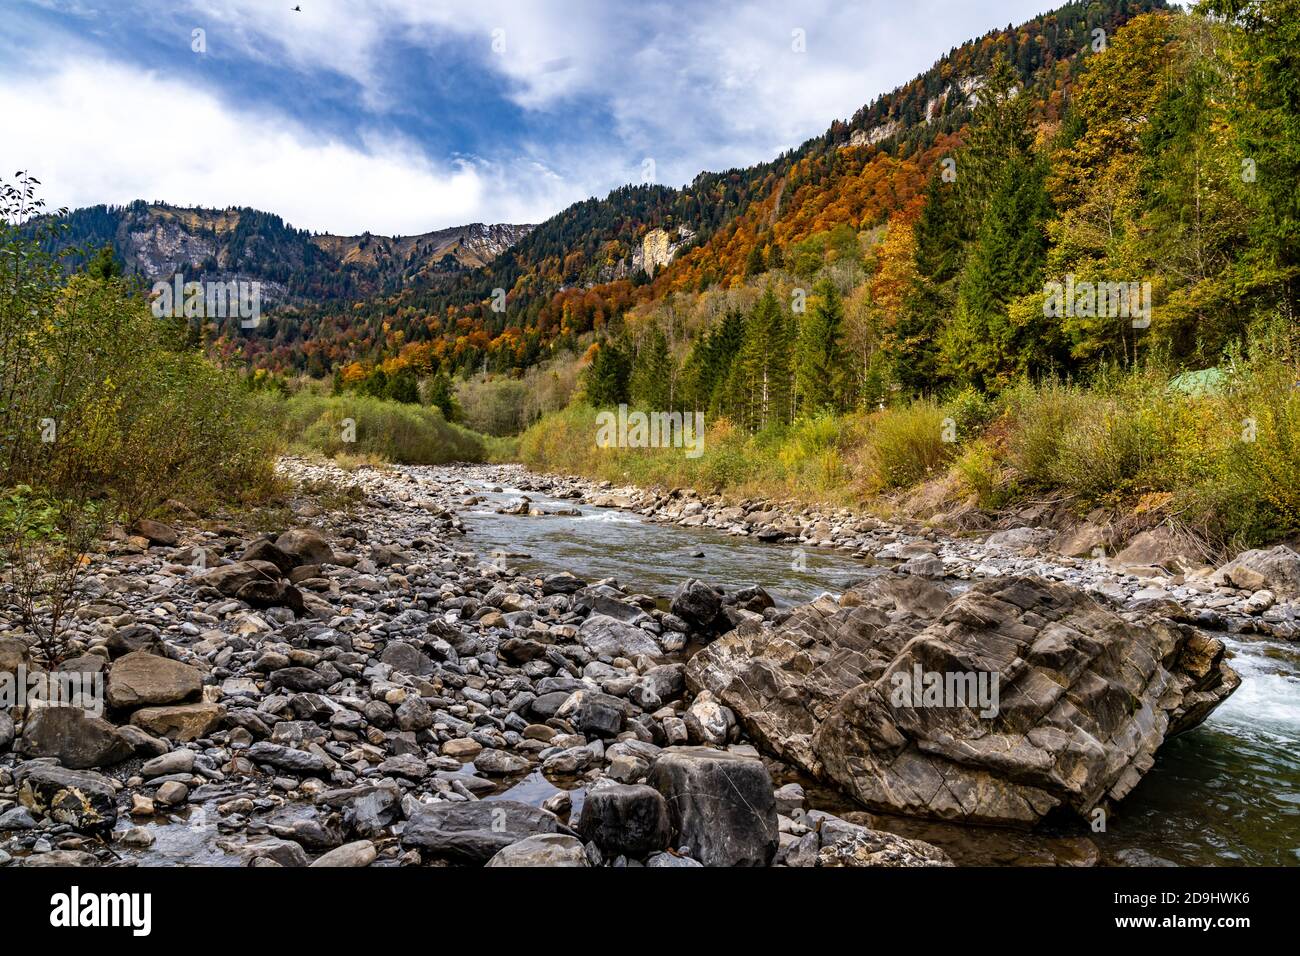 Der Bergbach fliesst durch den bunten Herbstwald. The mountain stream flows through the colorful autumn forest. Mellau, Bregenzerwald, Austria Stock Photo